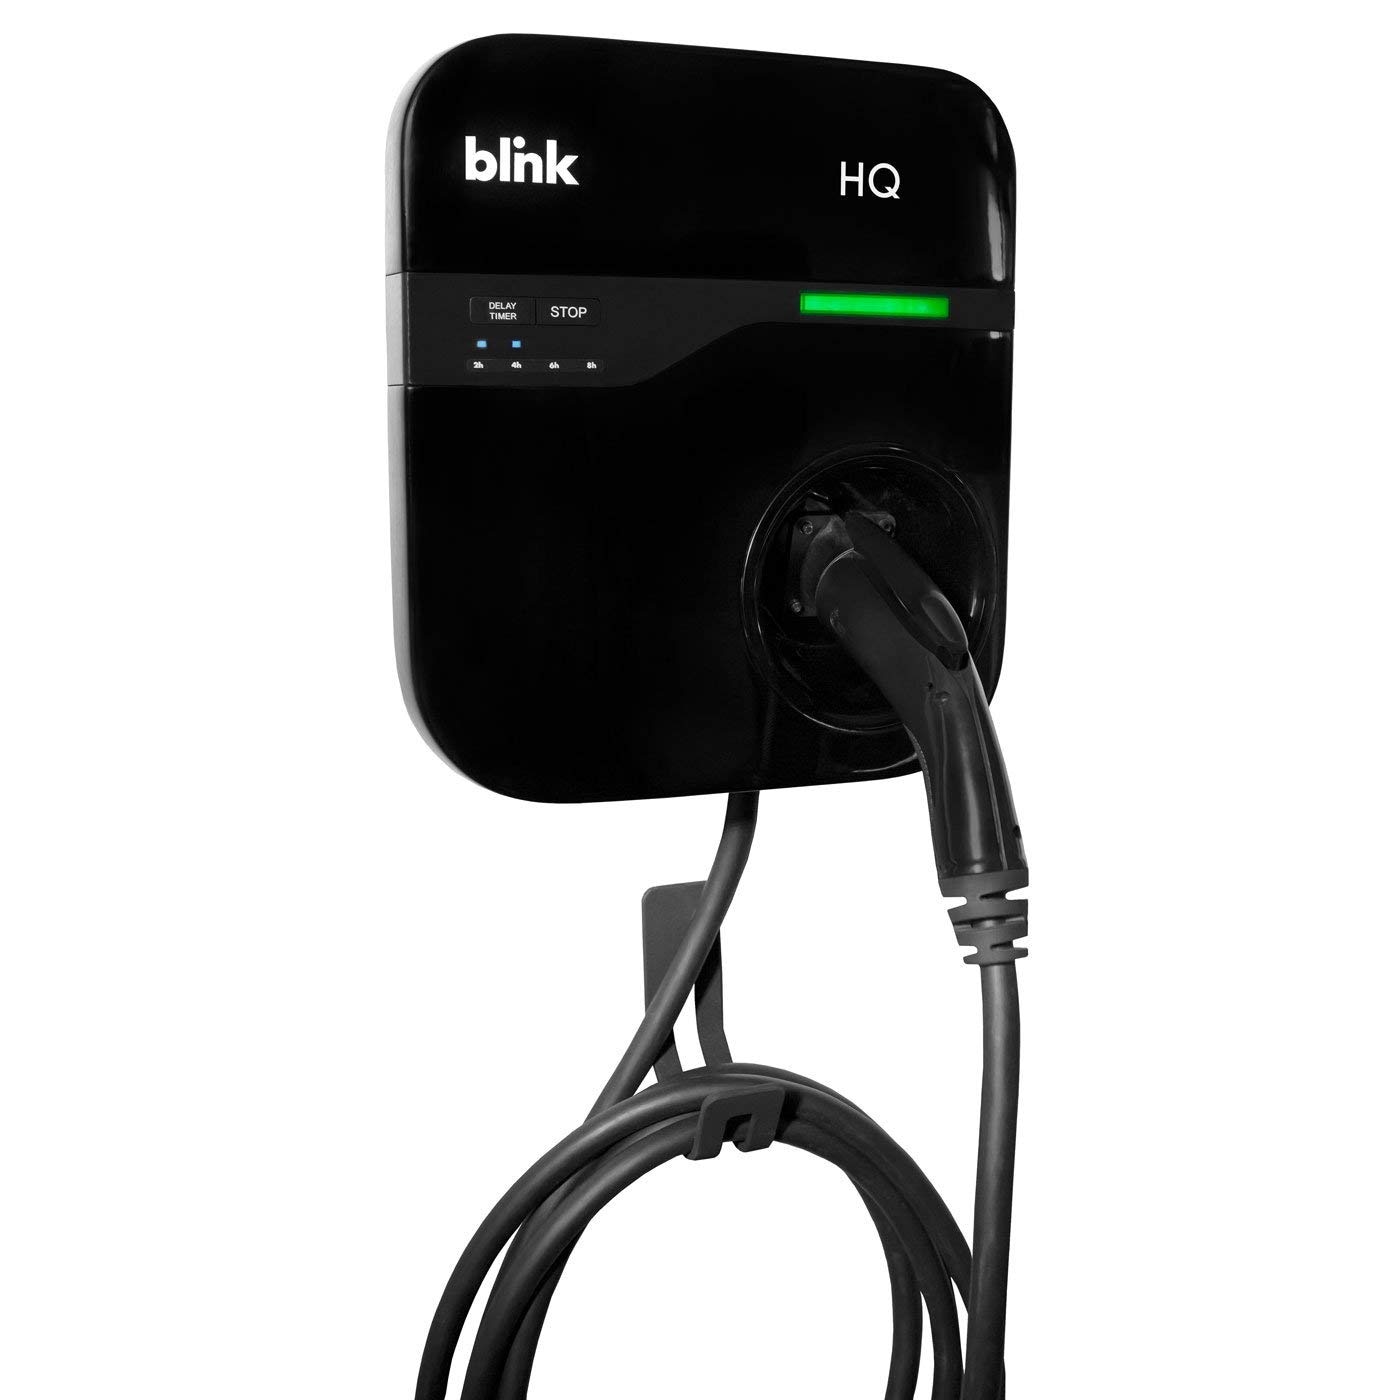 Blink Series 8 Commercial Level 2 EV Charging Stations : Blink Charging